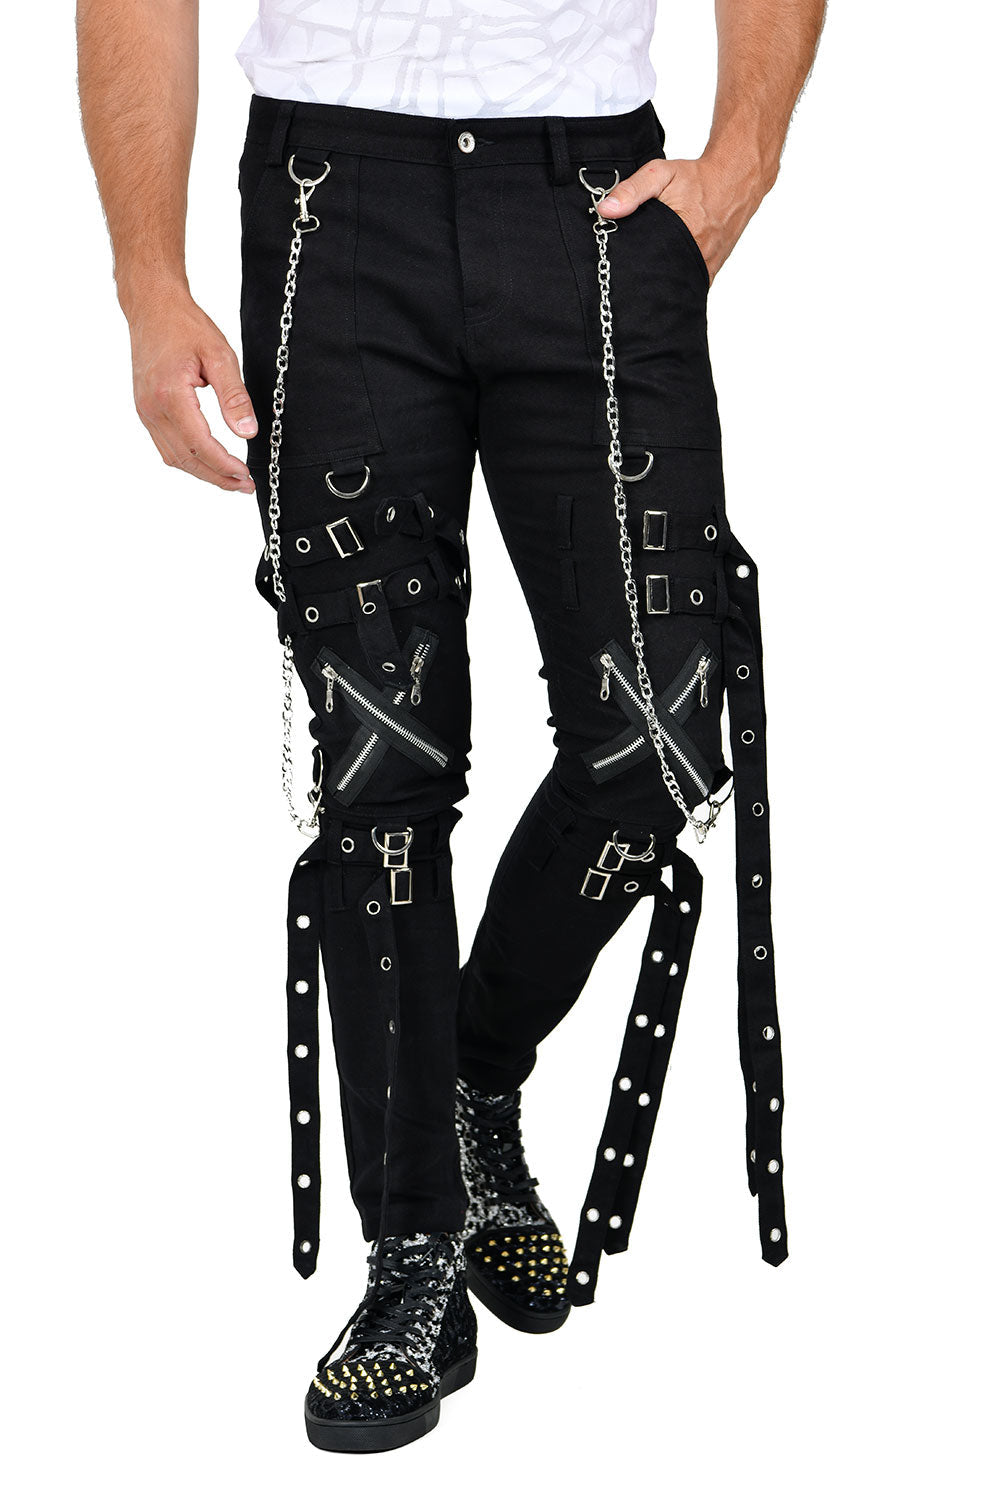 BARABAS Men's Belts Zipper Gothic Denim Jeans Pants FTP101